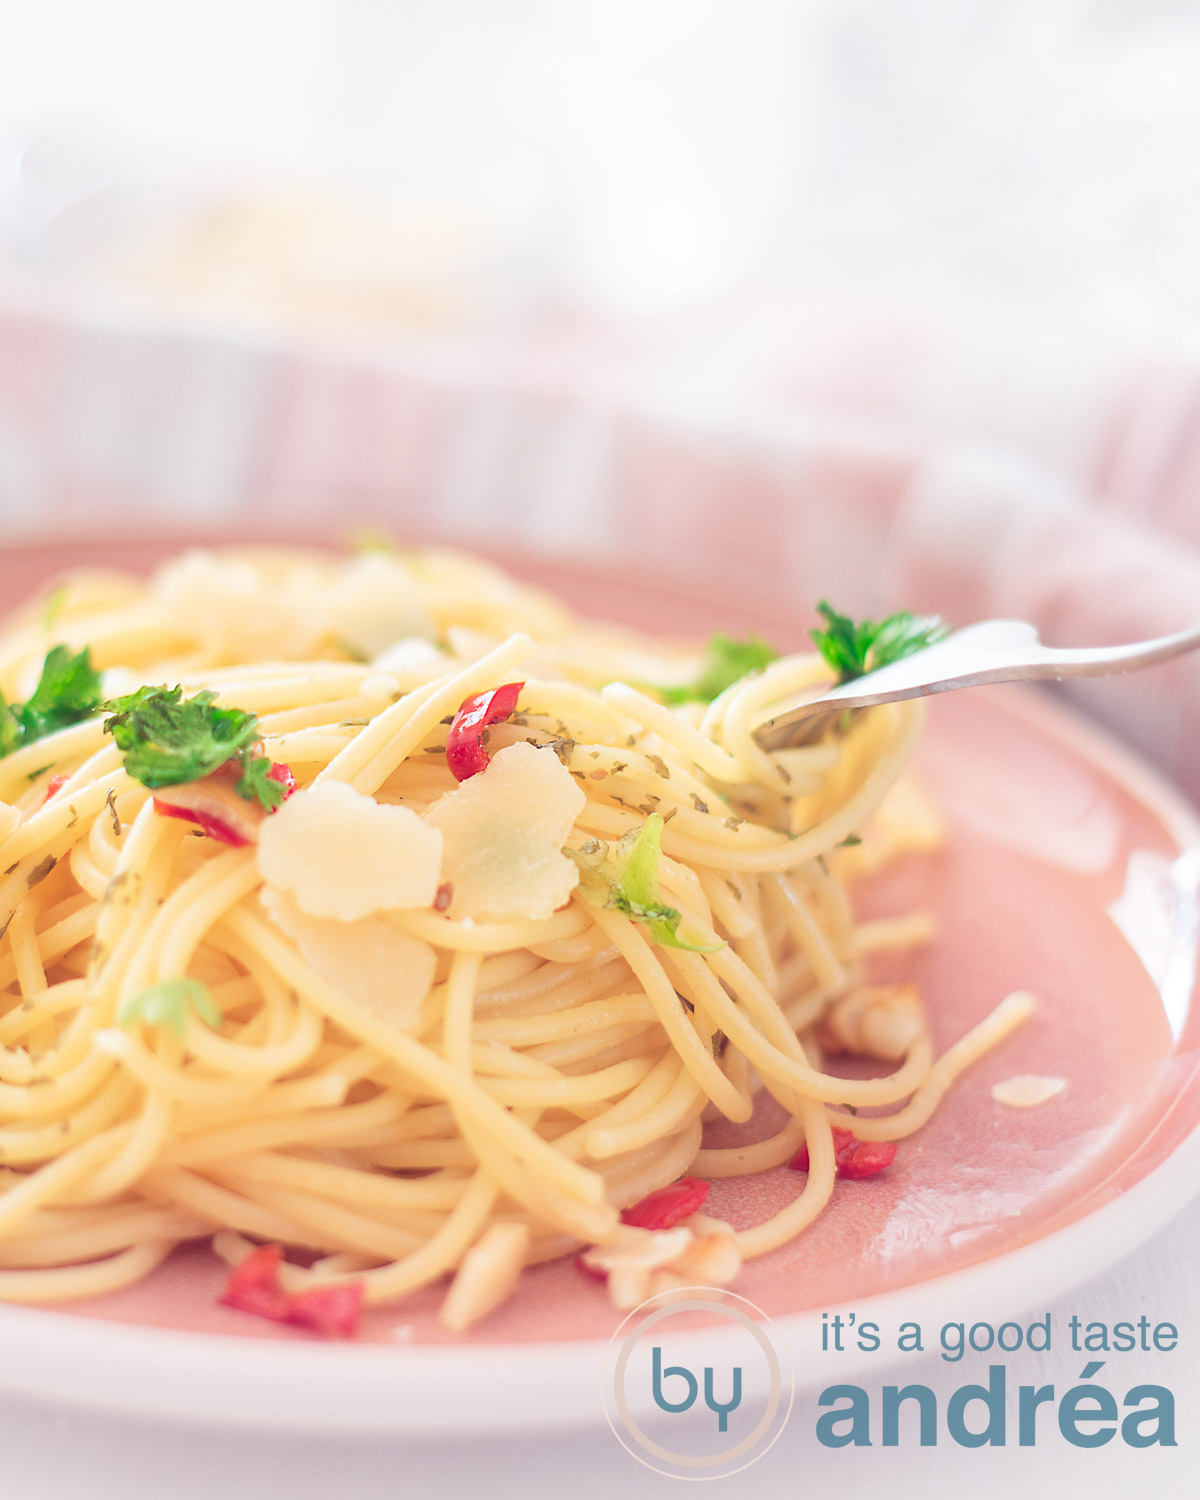 Een deel van een roze bord met een berg spaghetti met pepers, peterselie, parmezaanse kaas, knoflook en olijfolie. Een vork steekt in de spaghetti. Een witte ondergrond